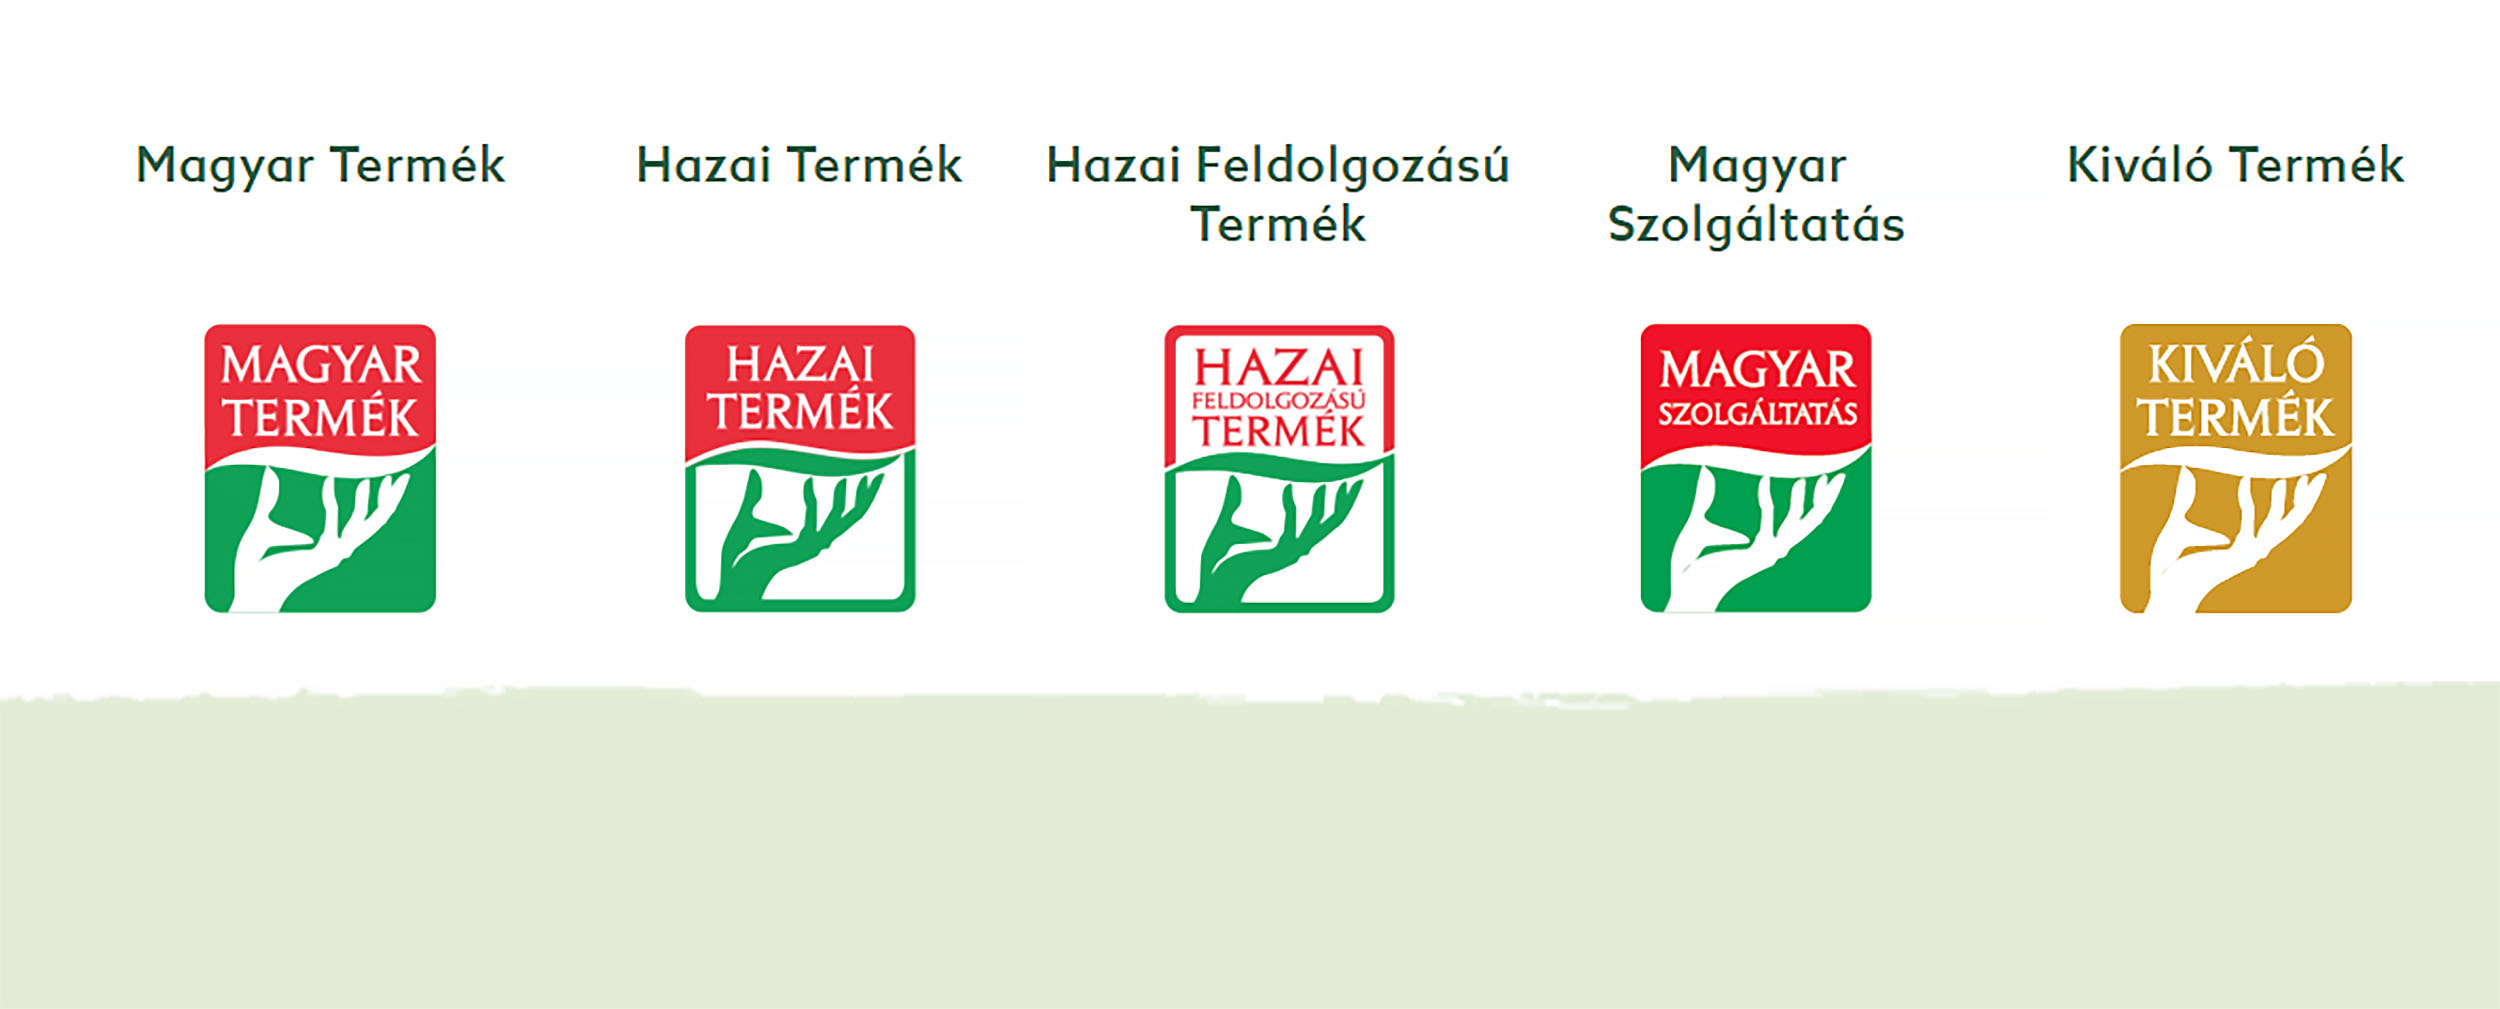 A Magyar Termék védjegyes árucikkek egyharmada üzletlánci saját márkás termék